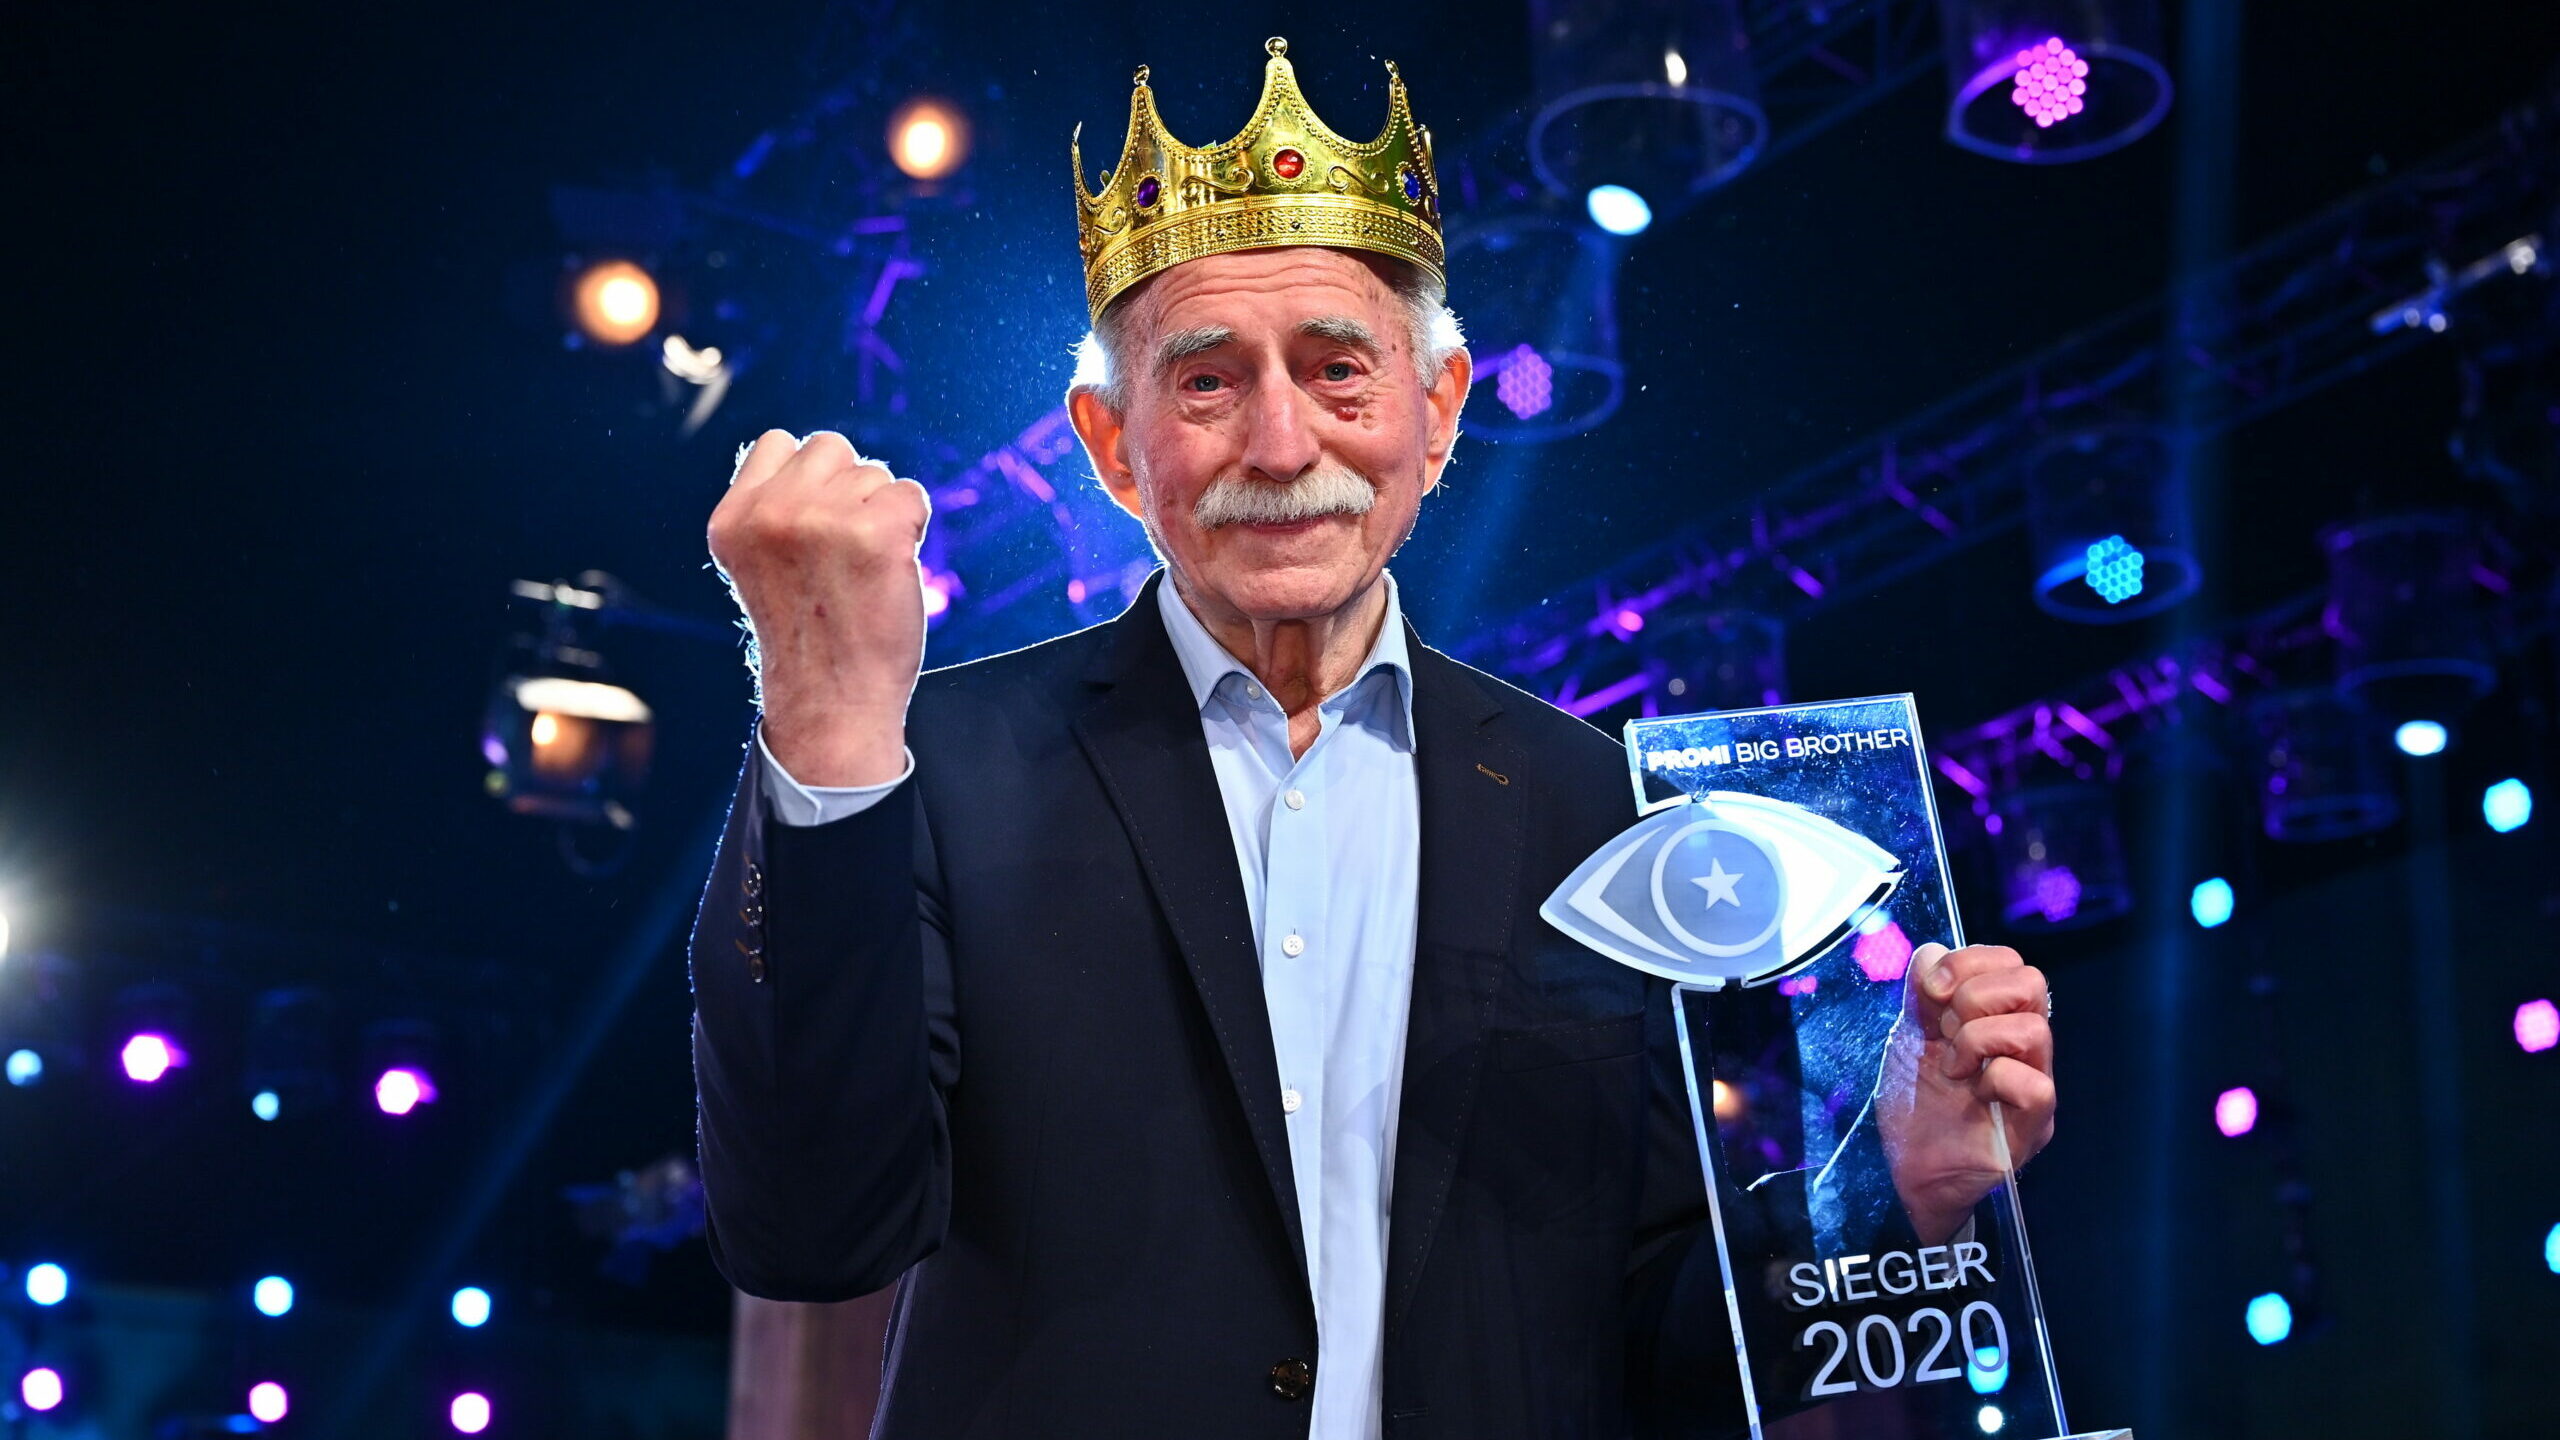 Promi Big Brother 2020 Gewinner: Werner Hansch ist der Sieger von Staffel 8 1